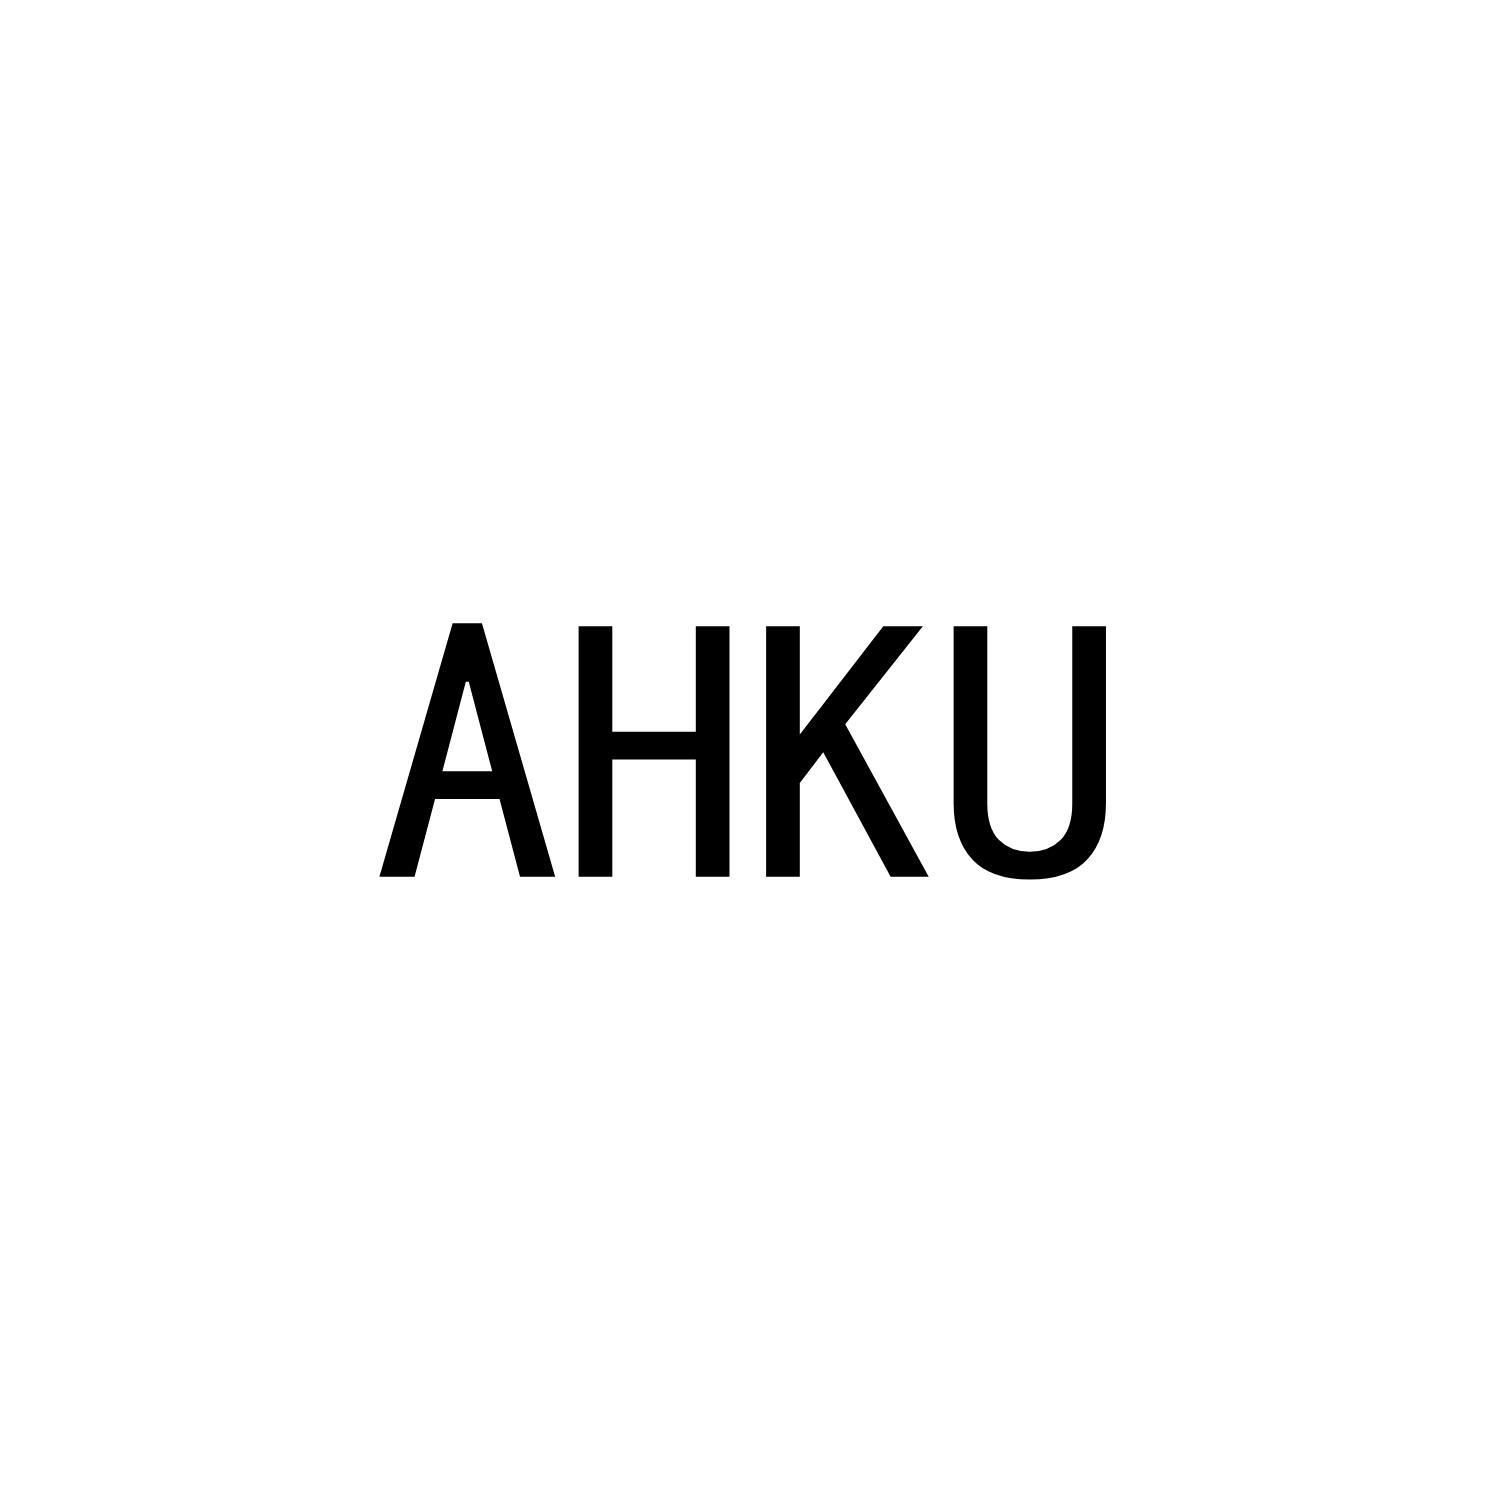 AHKU